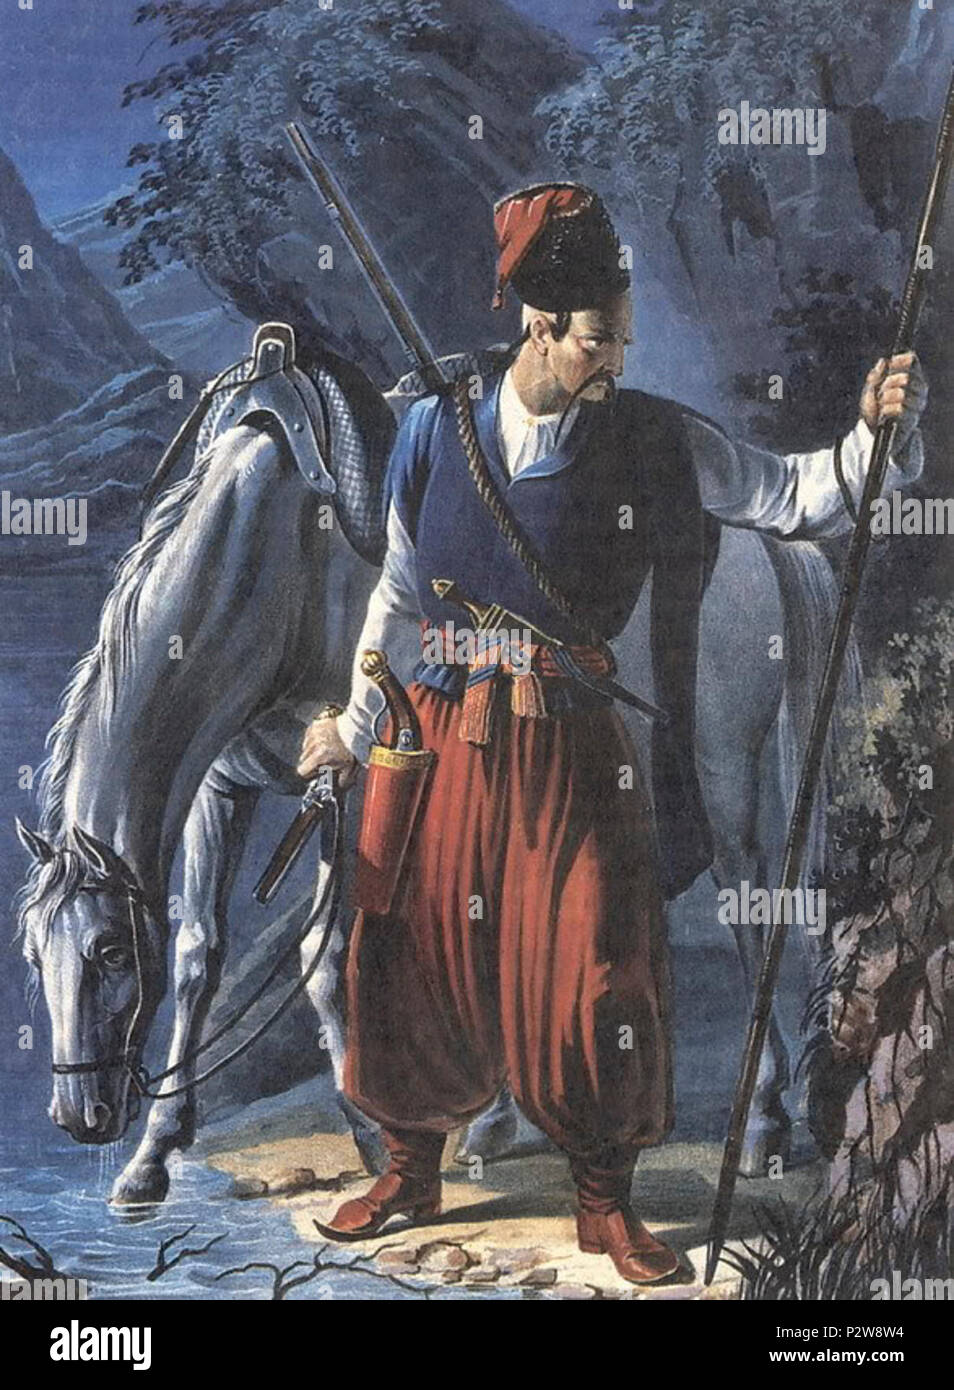 02 210 colore illustrazioni per libri di descrizione storica degli abiti e armi di truppe russe Foto Stock